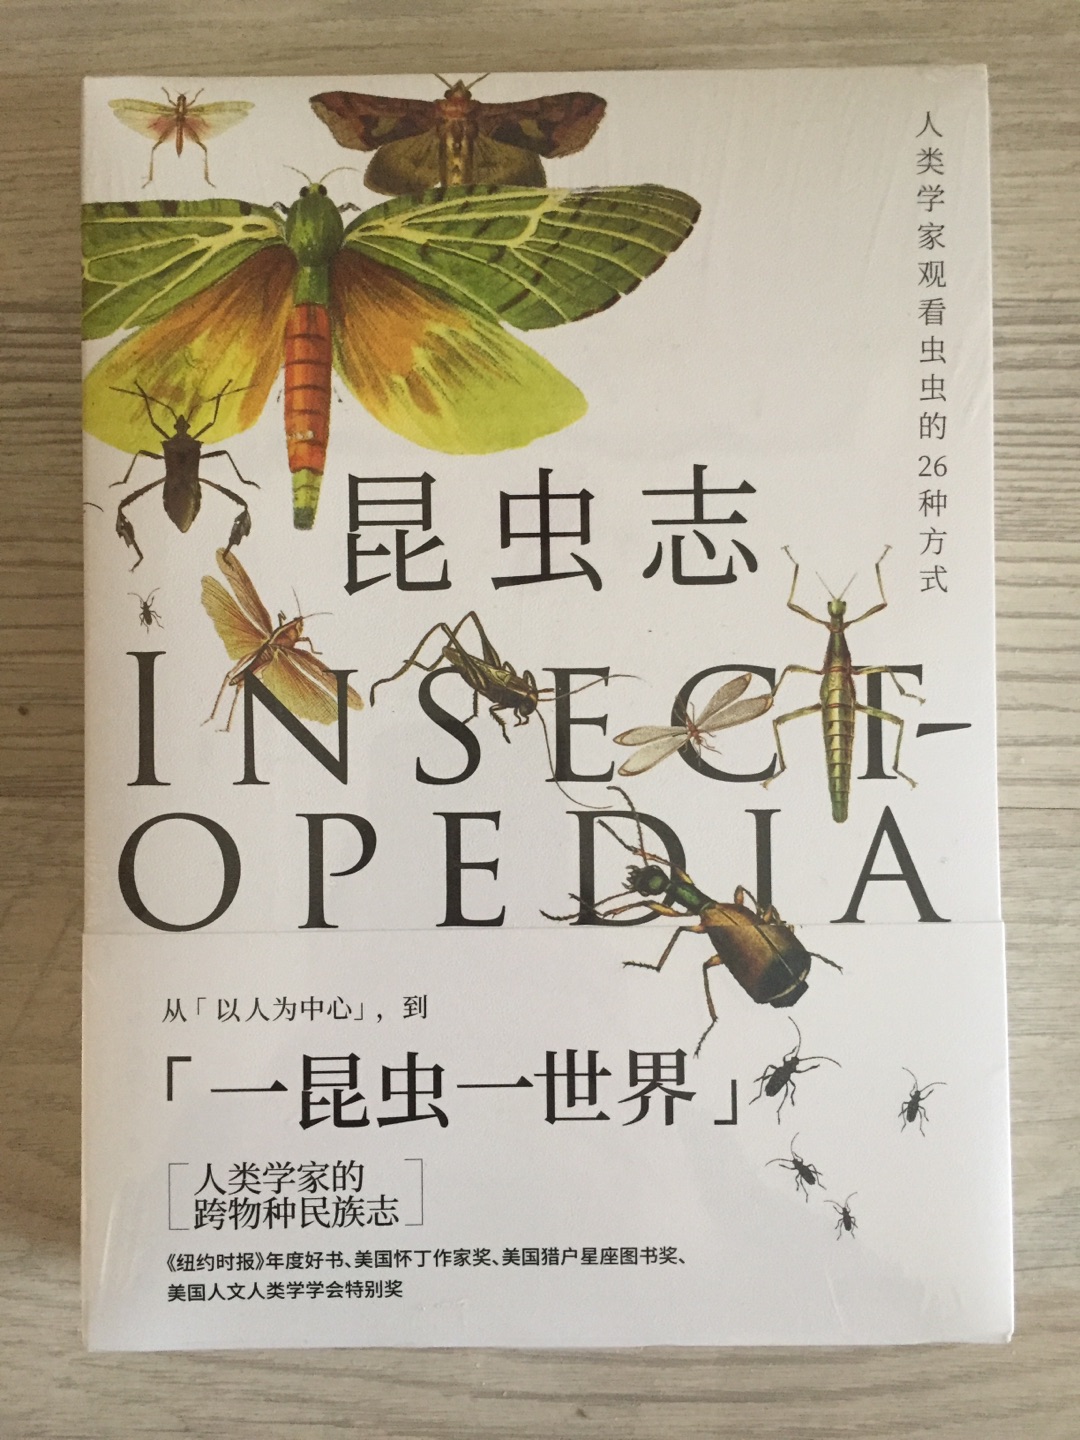 书很厚，是简装版的，但是印刷的质量还是可以的。里面有很多插图，介绍了很多关于昆虫的知识，作者的观点也很独特。可以慢慢阅读。好评。